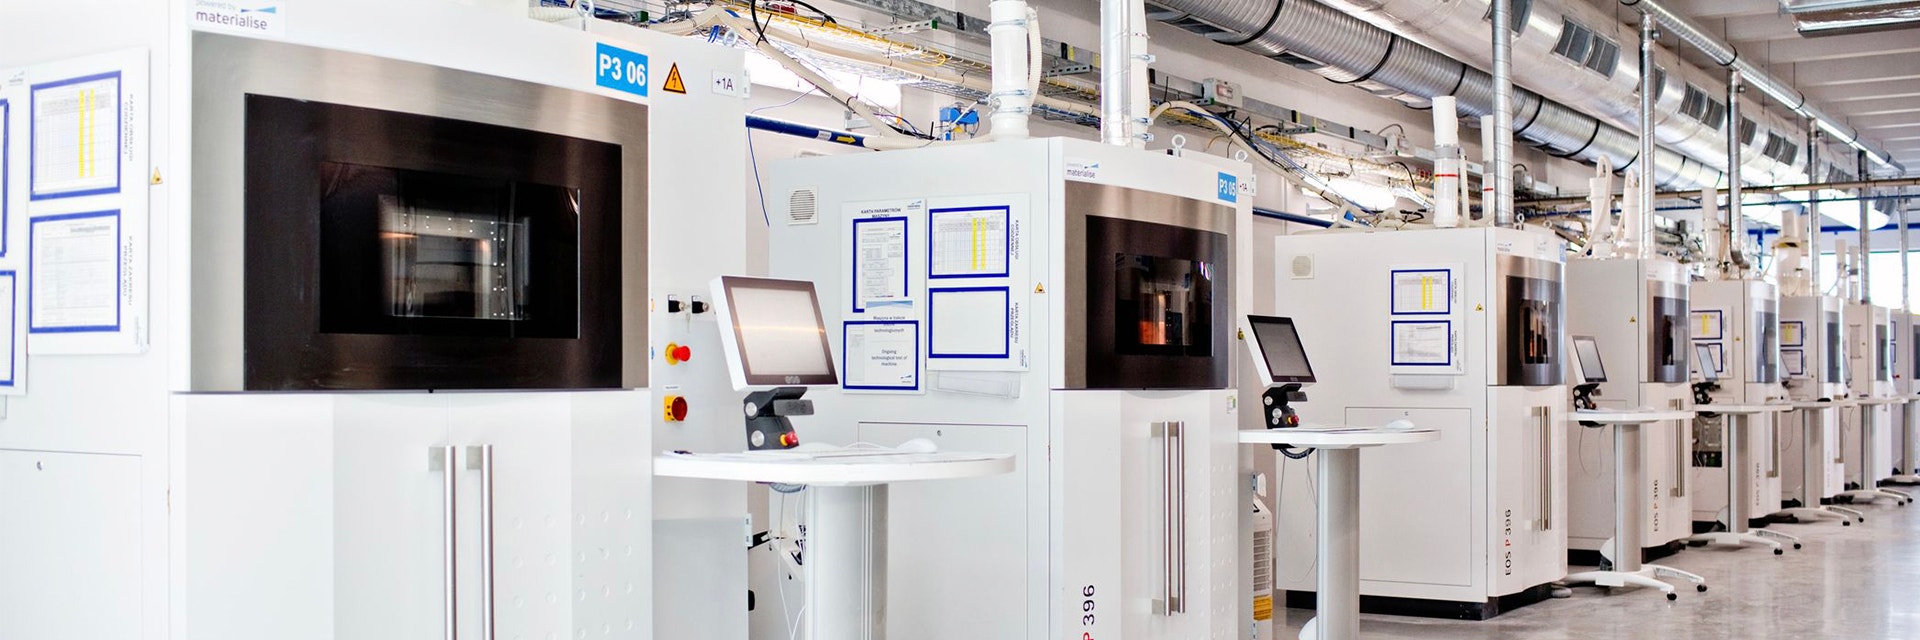 Eine Reihe EOS 3D-Drucker in einer Produktionsstätte von Materialise